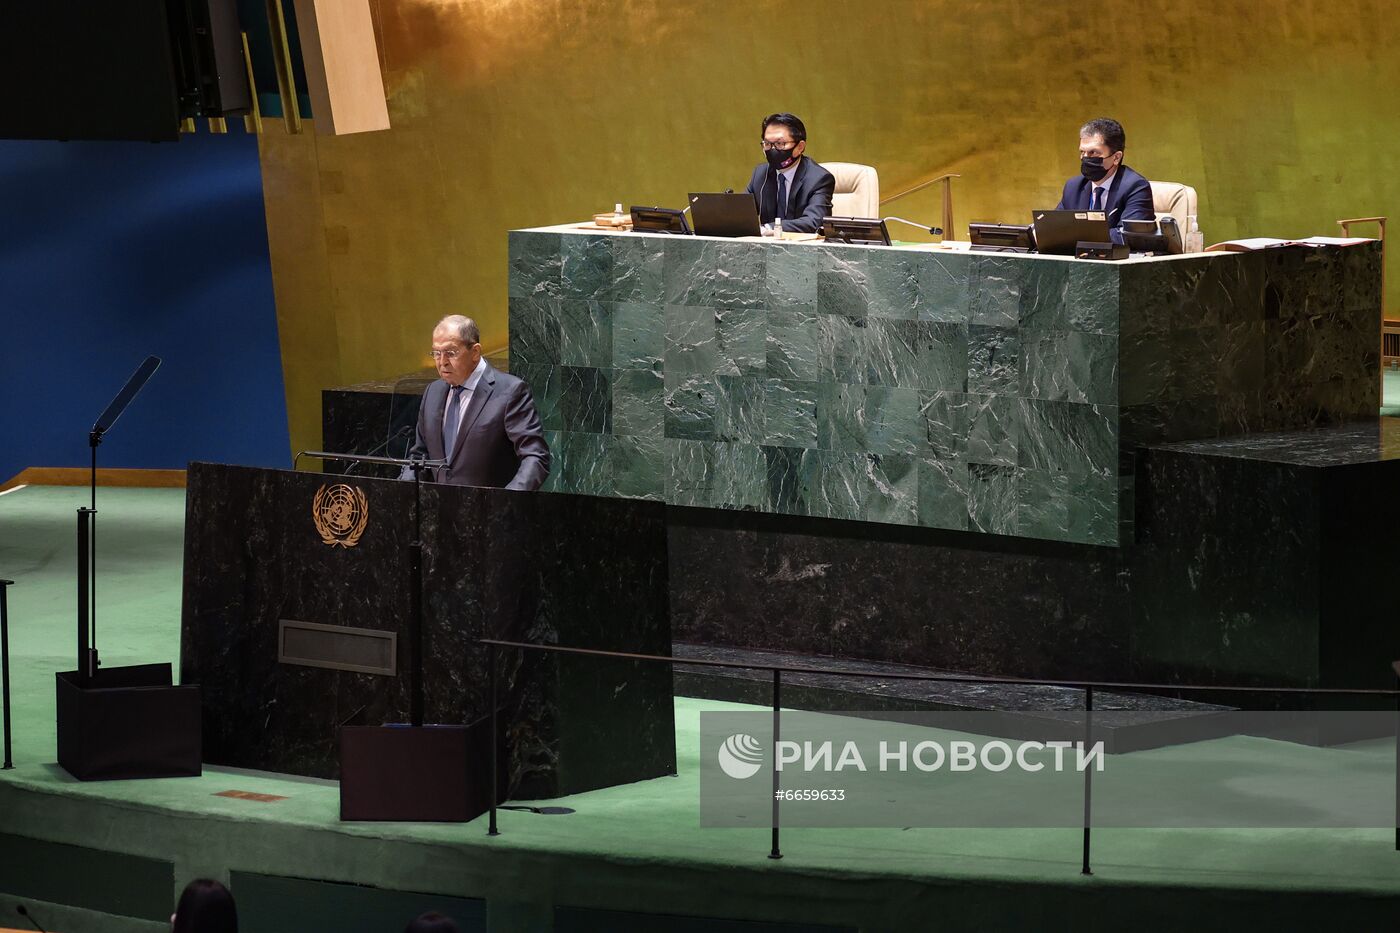 Выступление С. Лаврова на общеполитической дискуссии 76-й сессии ГА ООН